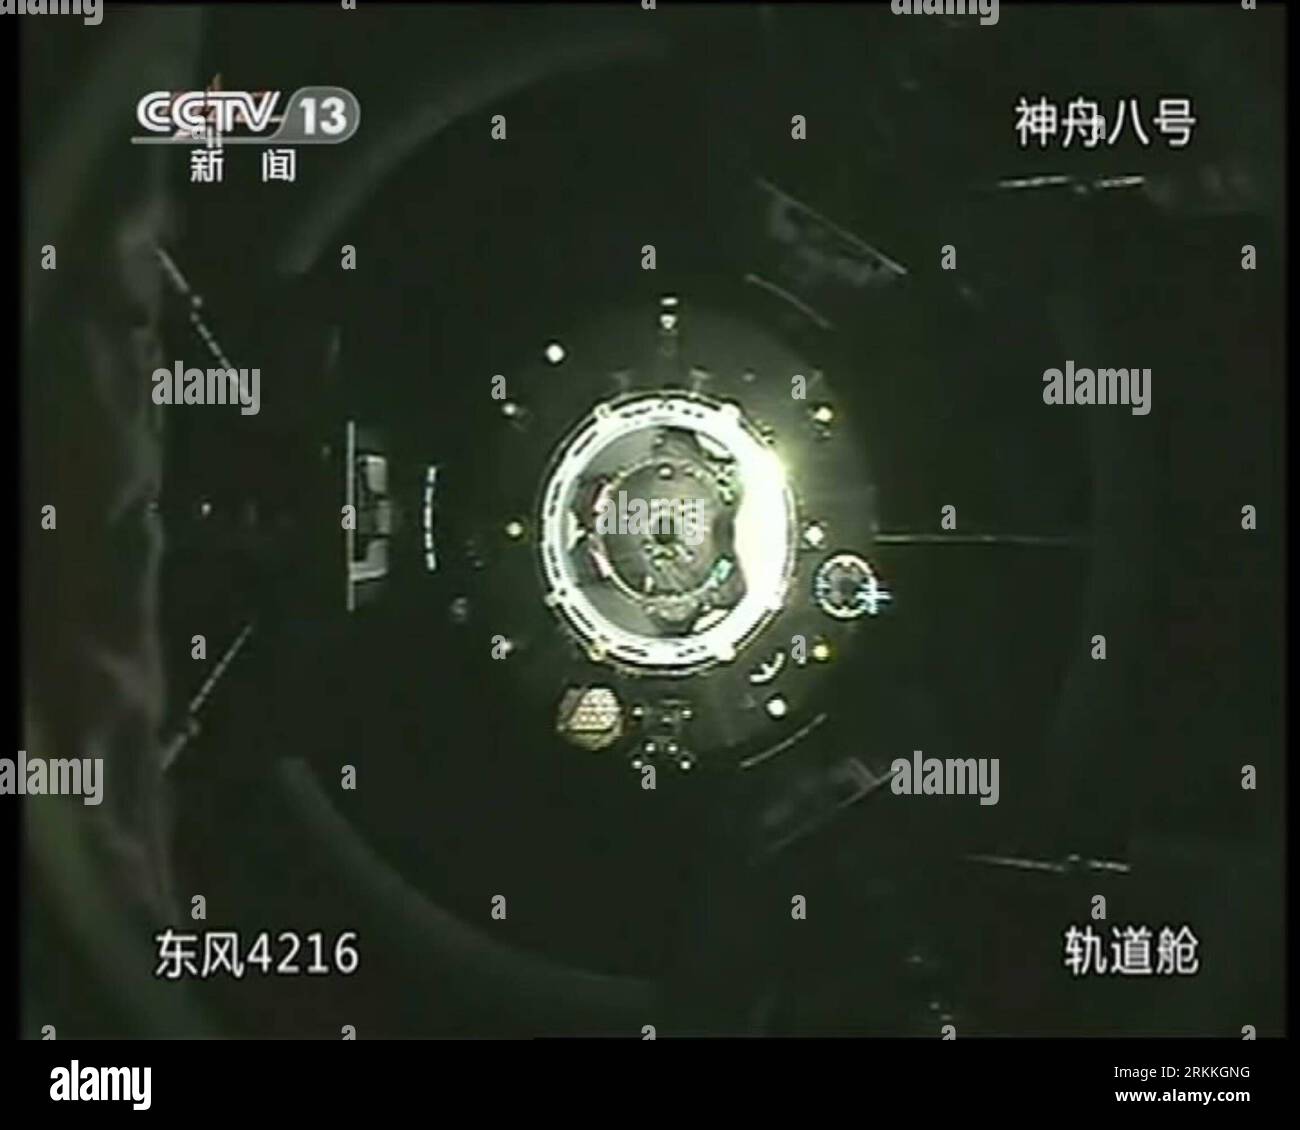 Bildnummer : 56241470 Datum : 02.11.2011 Copyright : imago/Xinhua (111103) -- PÉKIN, 3 novembre 2011 (Xinhua) -- Une capture vidéo prise à la télévision centrale de Chine le 3 novembre 2011 montre le vaisseau spatial Shenzhou-8 amarré avec le module de laboratoire spatial Tiangong-1. Vaisseau spatial sans pilote Shenzhou-8 amarré avec le module de laboratoire spatial Tiangong-1 tôt jeudi, selon le Centre de contrôle aérospatial de Beijing. (Xinhua) (ljh) (TIANGONG-1&SHENZHOU-8 DOCKING)CHINA-TIANGONG-1 -SHENZHOU-8 -DOCKING (CN) PUBLICATIONxNOTxINxCHN Gesellschaft Raumfahrt Andocken Andockmanöver x0x xst 2011 quadrat 56241470 Date 02 11 2 Banque D'Images